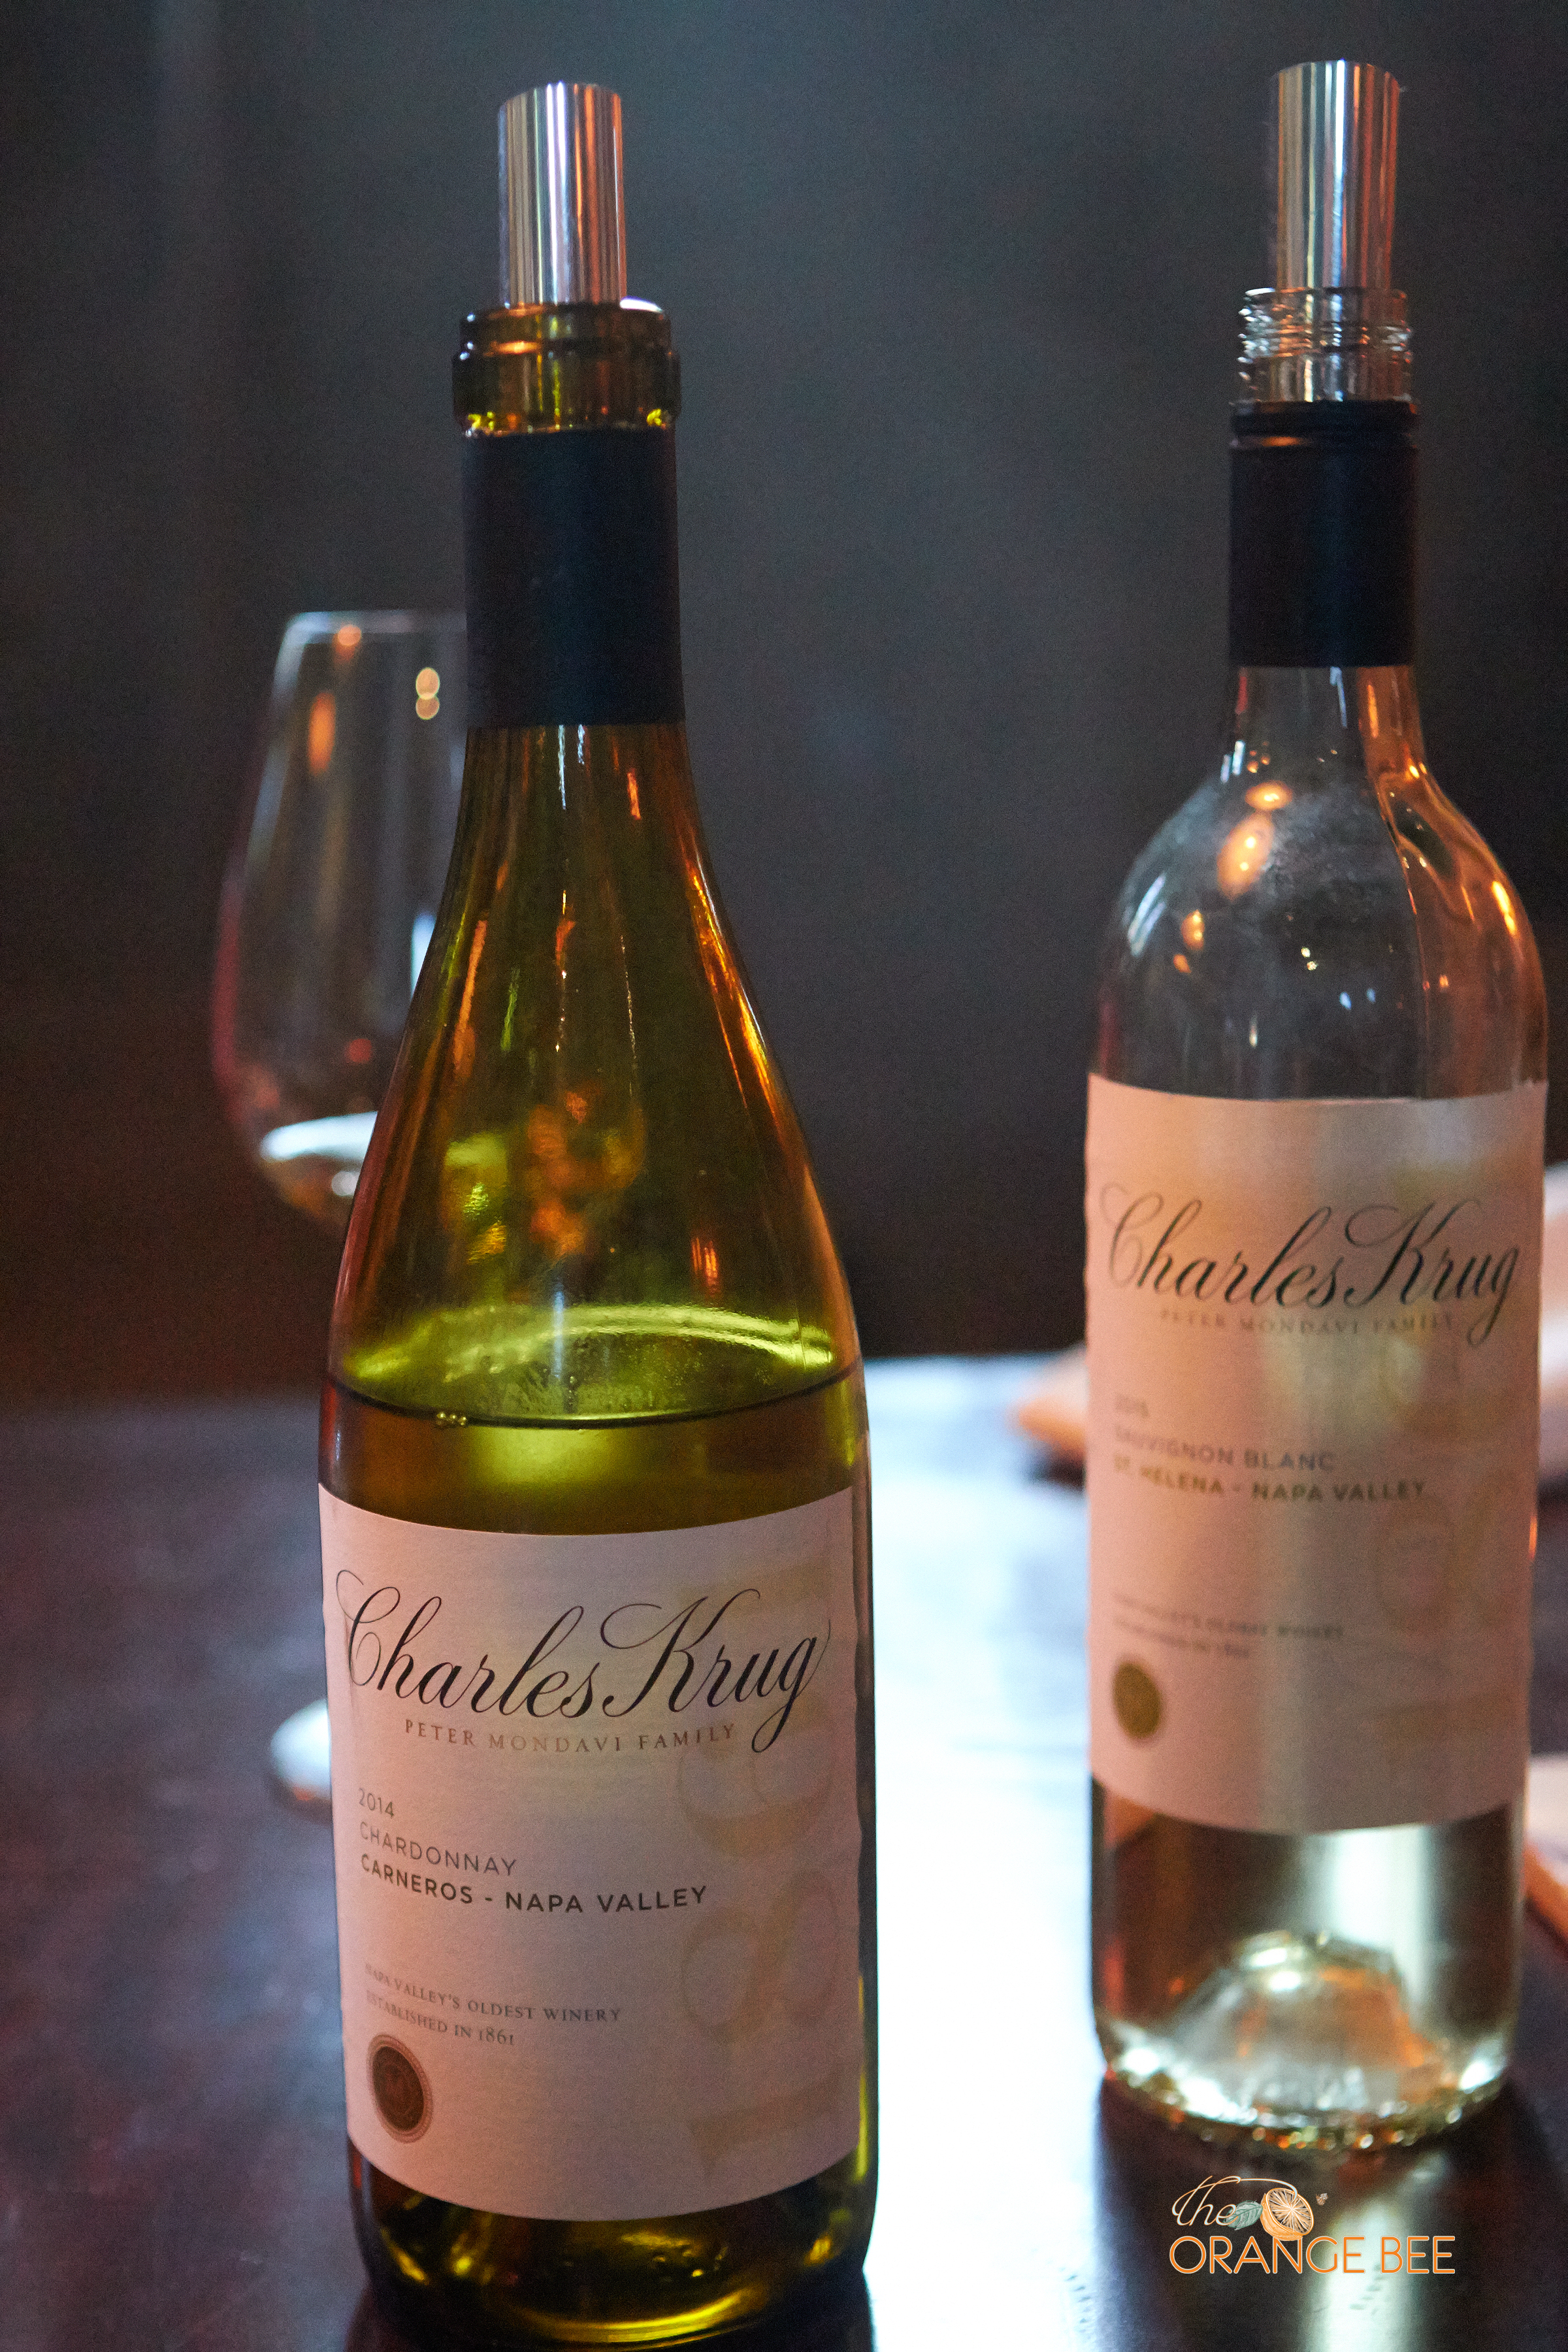 Charles Krug Chardonnay & Sauvagnion Blanc